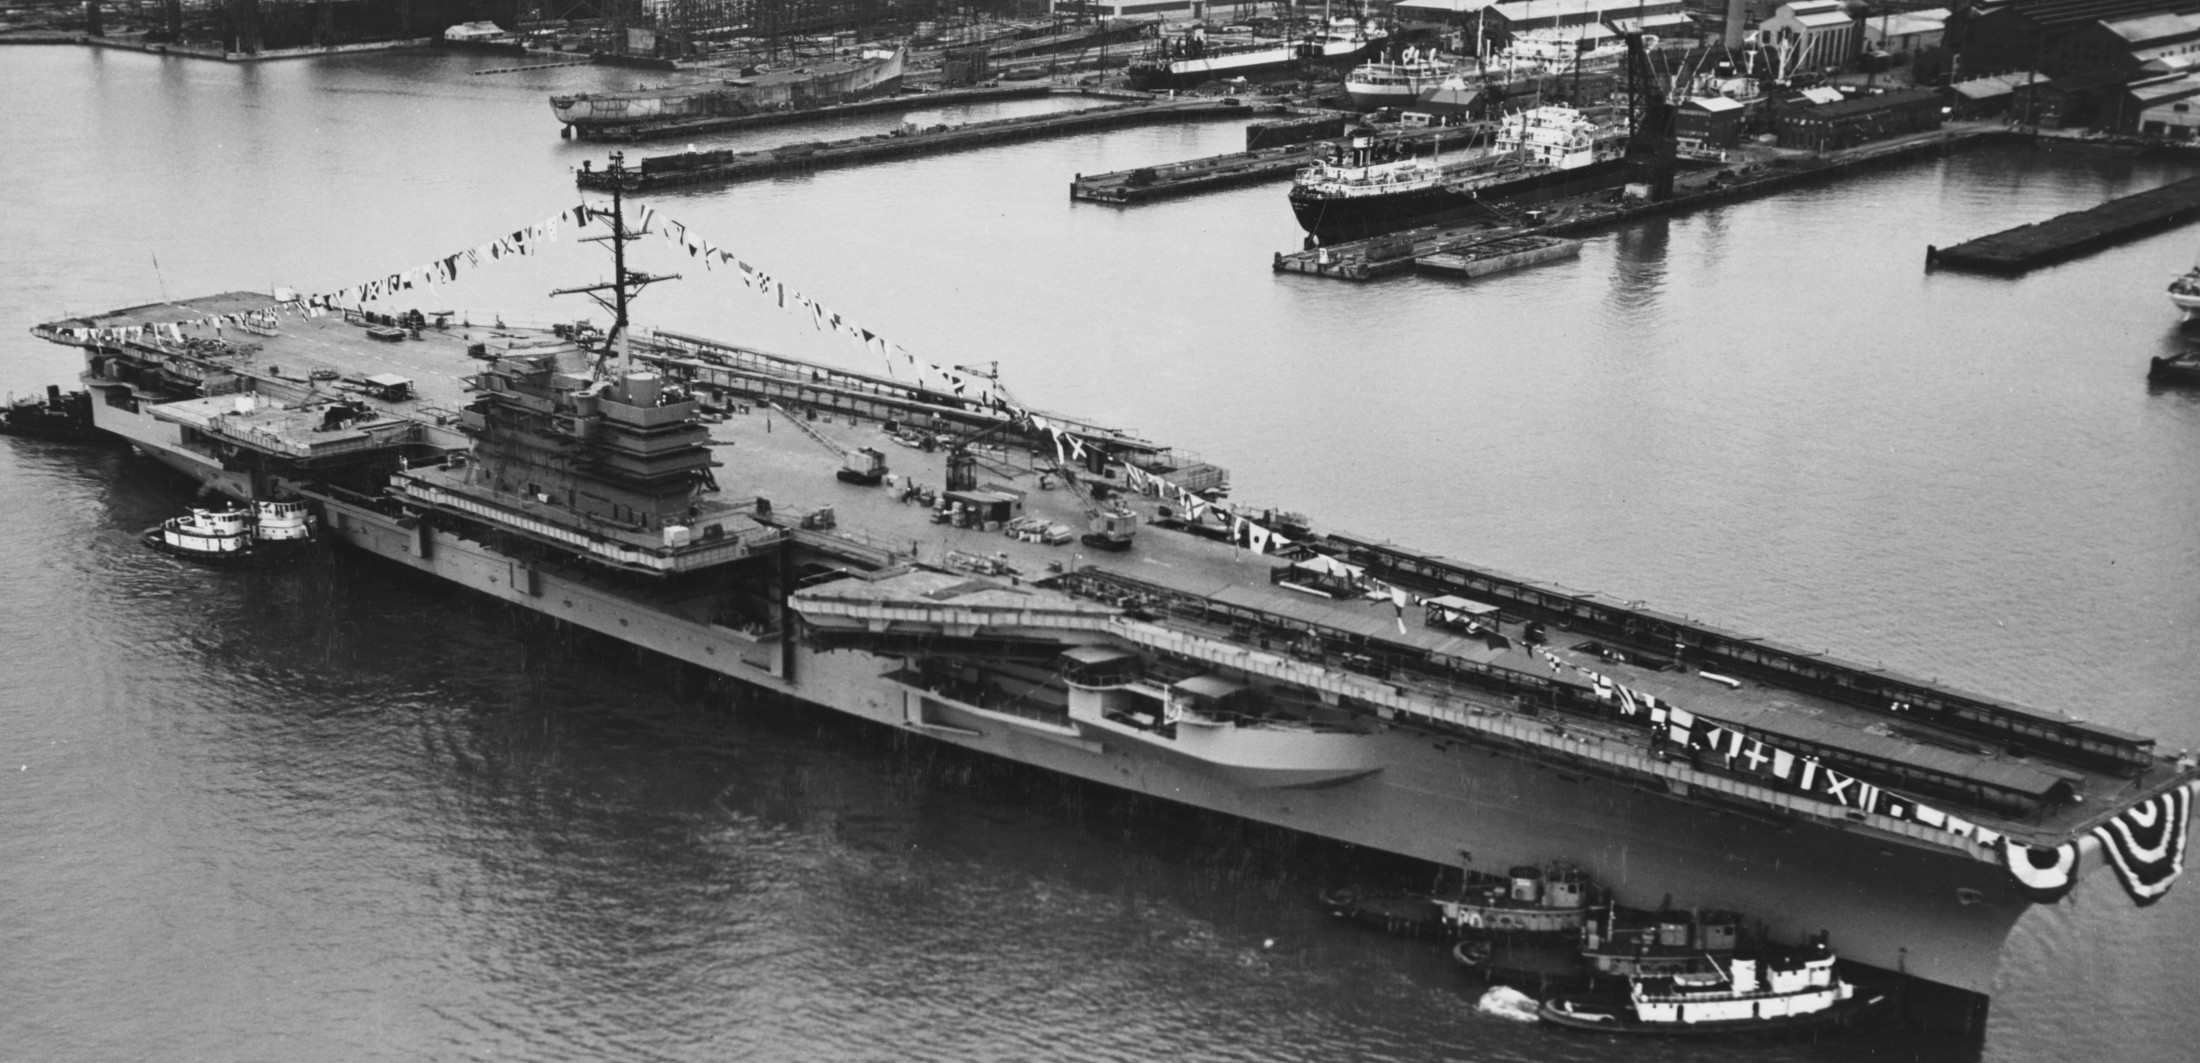 cva-61 uss ranger forrestal class aircraft carrier us navy launching newport news 1956 14